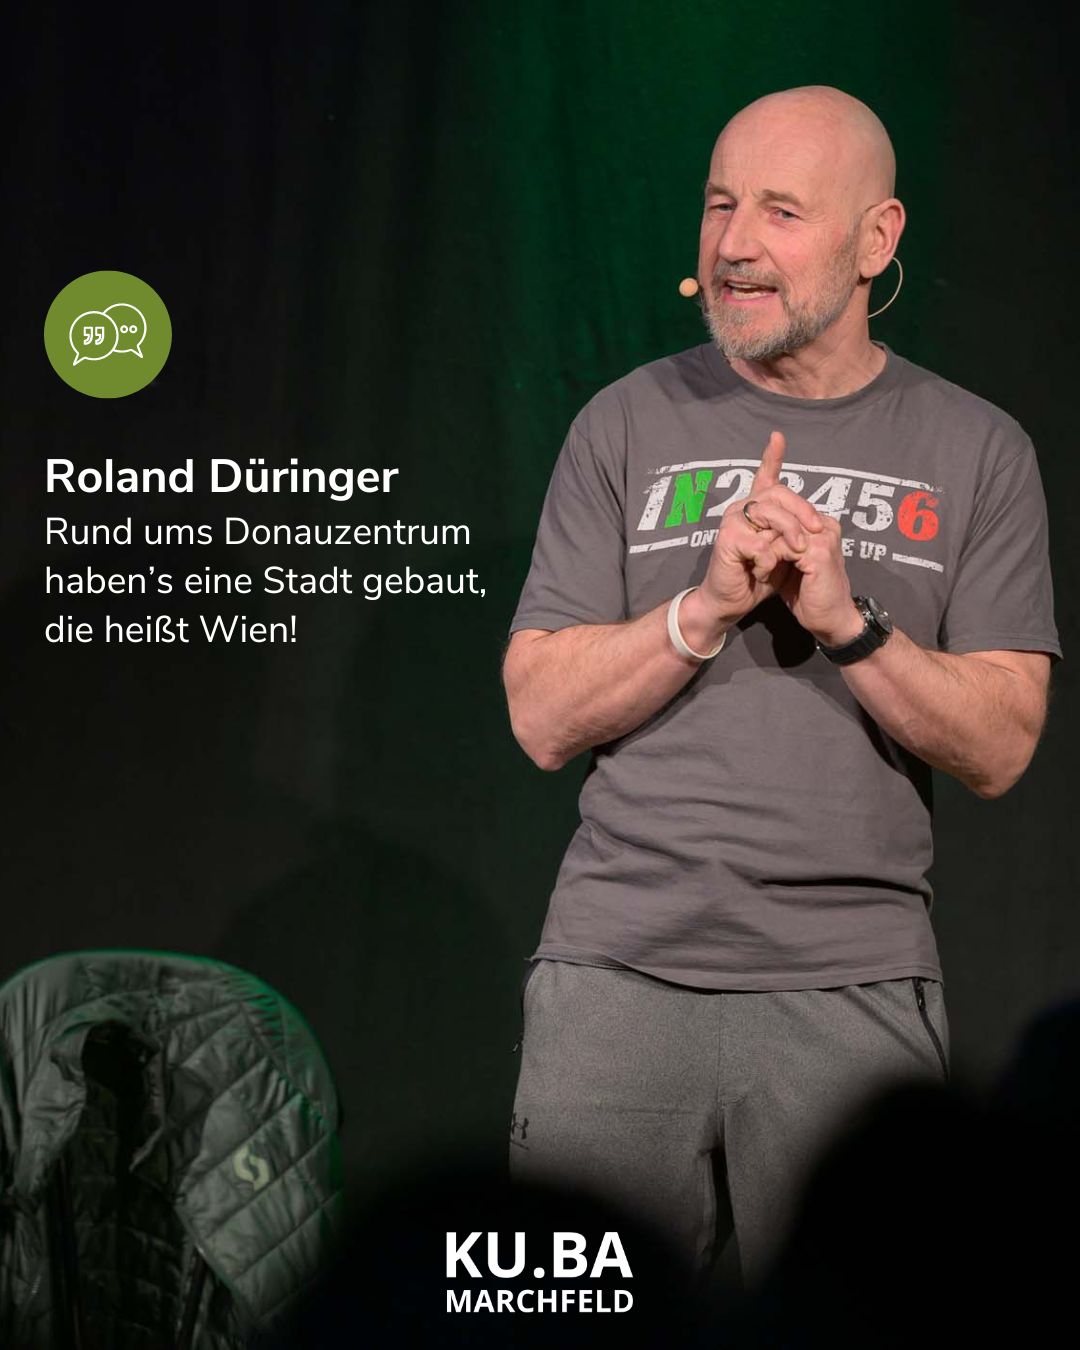 Roland Düringer unterhält das KU.BA Publikum